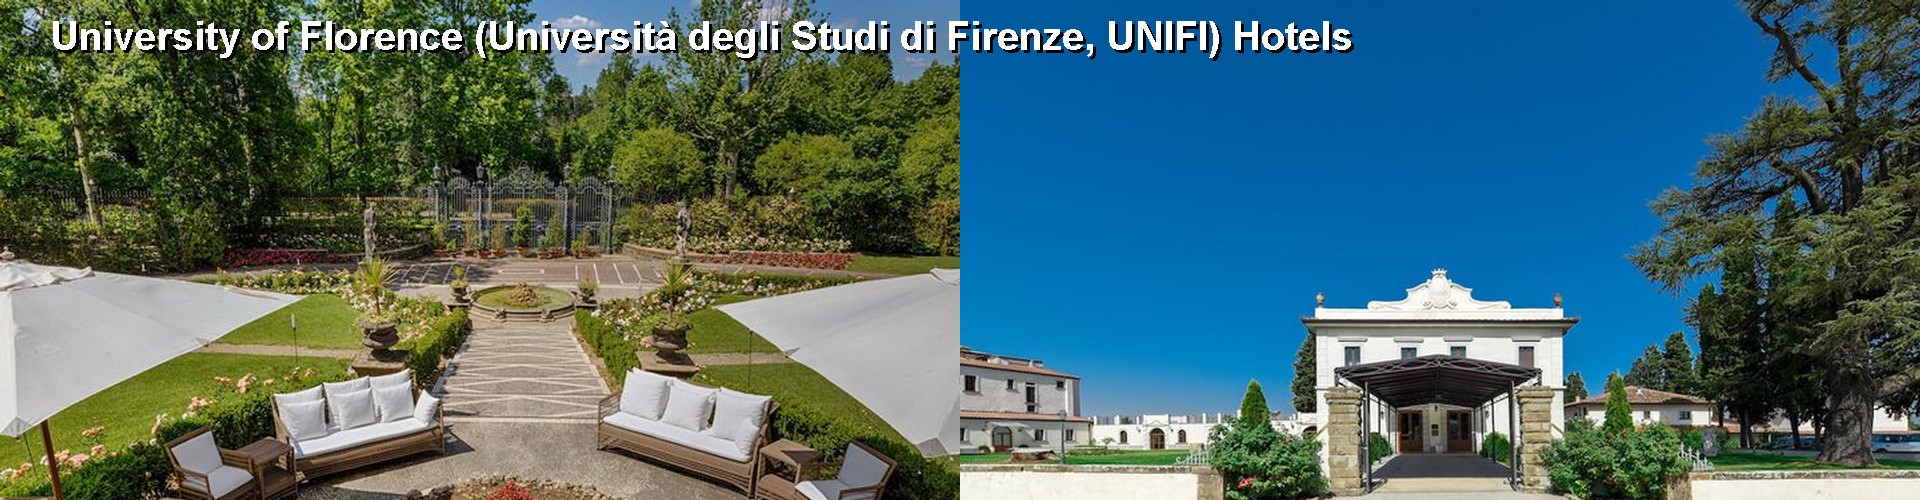 5 Best Hotels near University of Florence (Università degli Studi di Firenze, UNIFI)